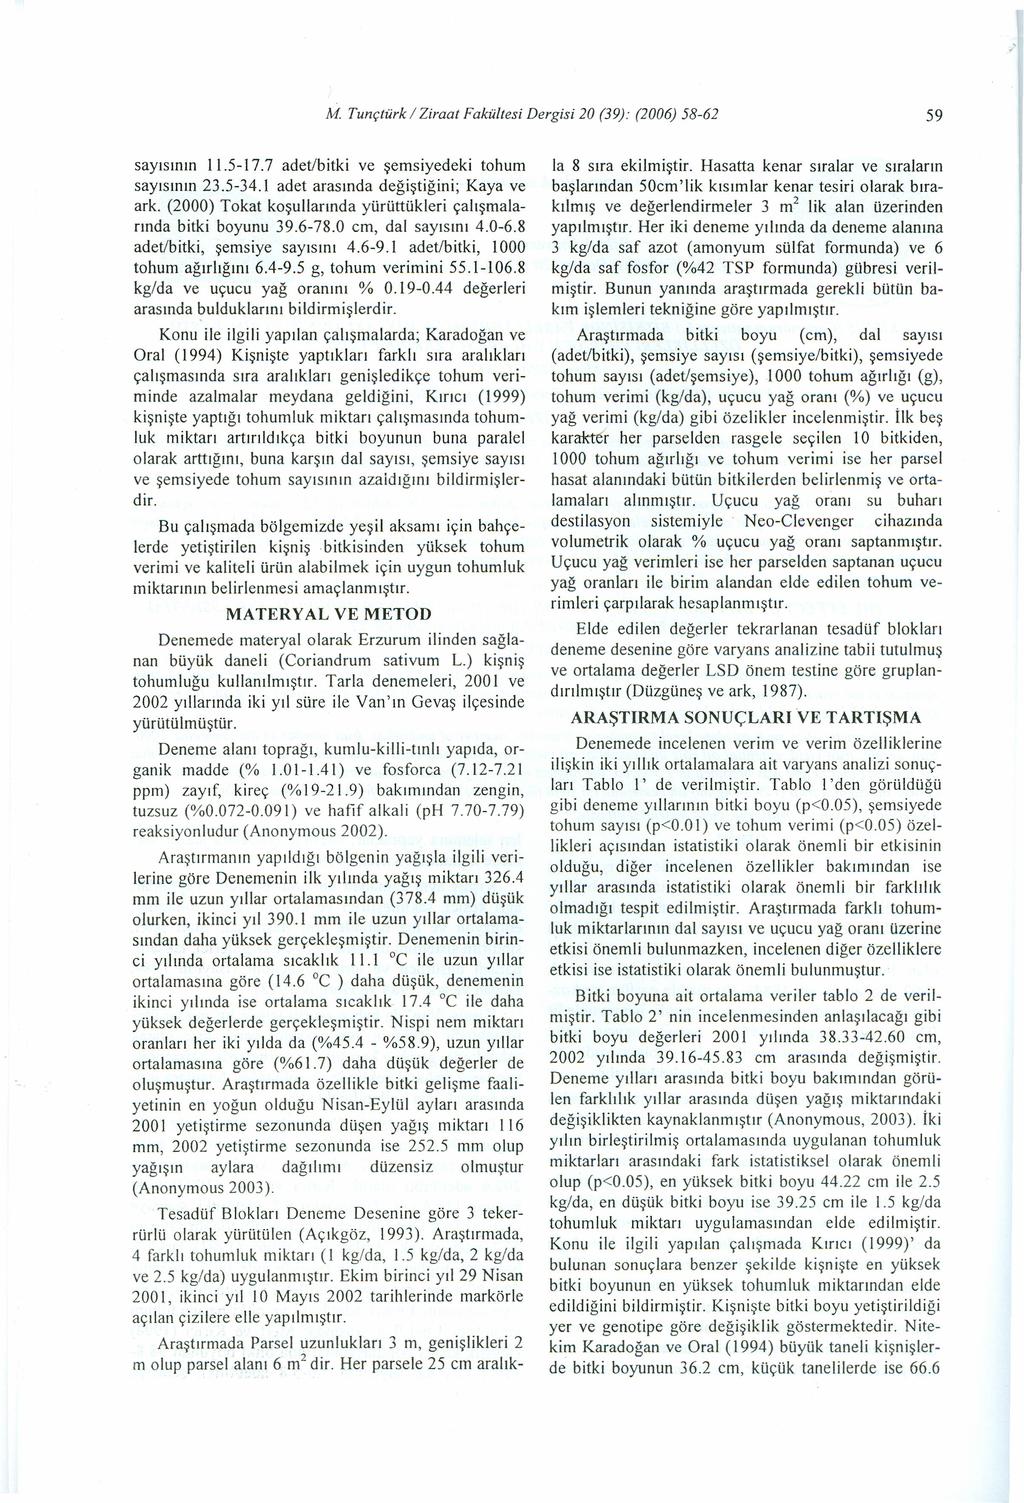 " M Tunçtürk / Zirt Fkültesi Dergisi 20 (39): (2006) 58-62 59 syısının 11.5-17.7 det/itki ve şemsiyedeki tohum syısının 23.5-34.1 det rsınd değiştiğini; Ky ve rk.